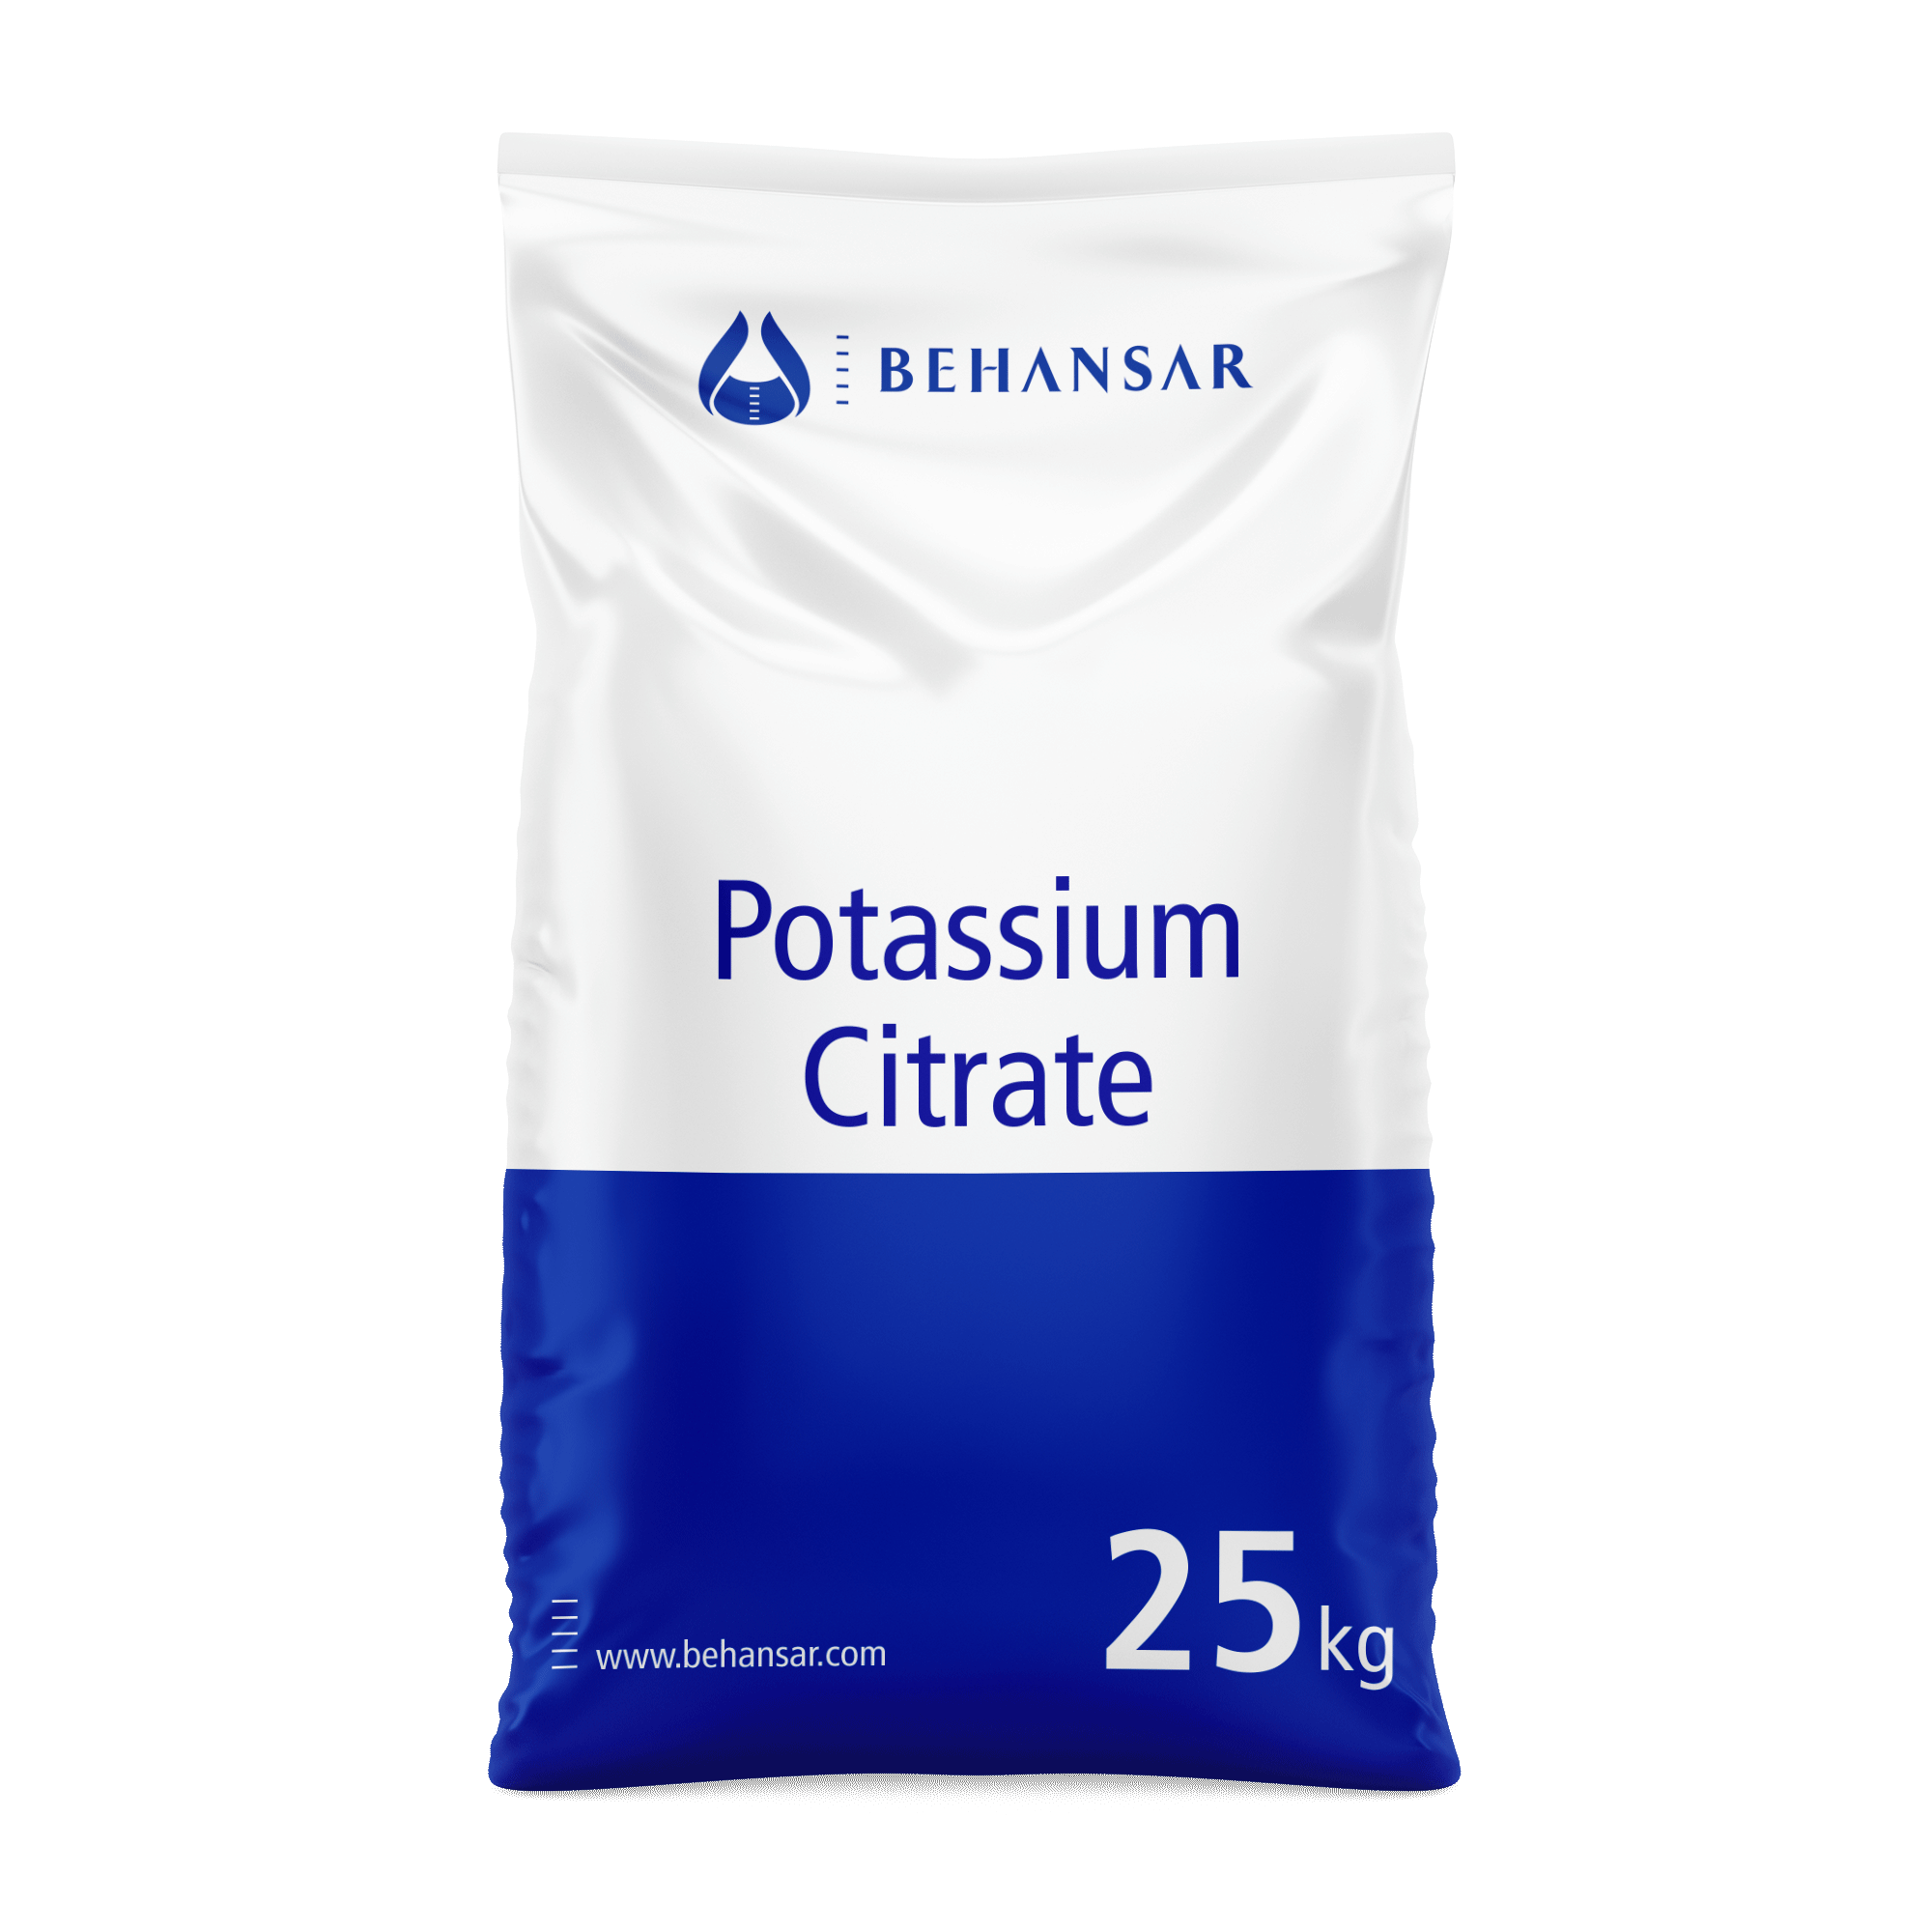 پتاسیم سیترات یکی از تولیدات شرکت بهانسار است